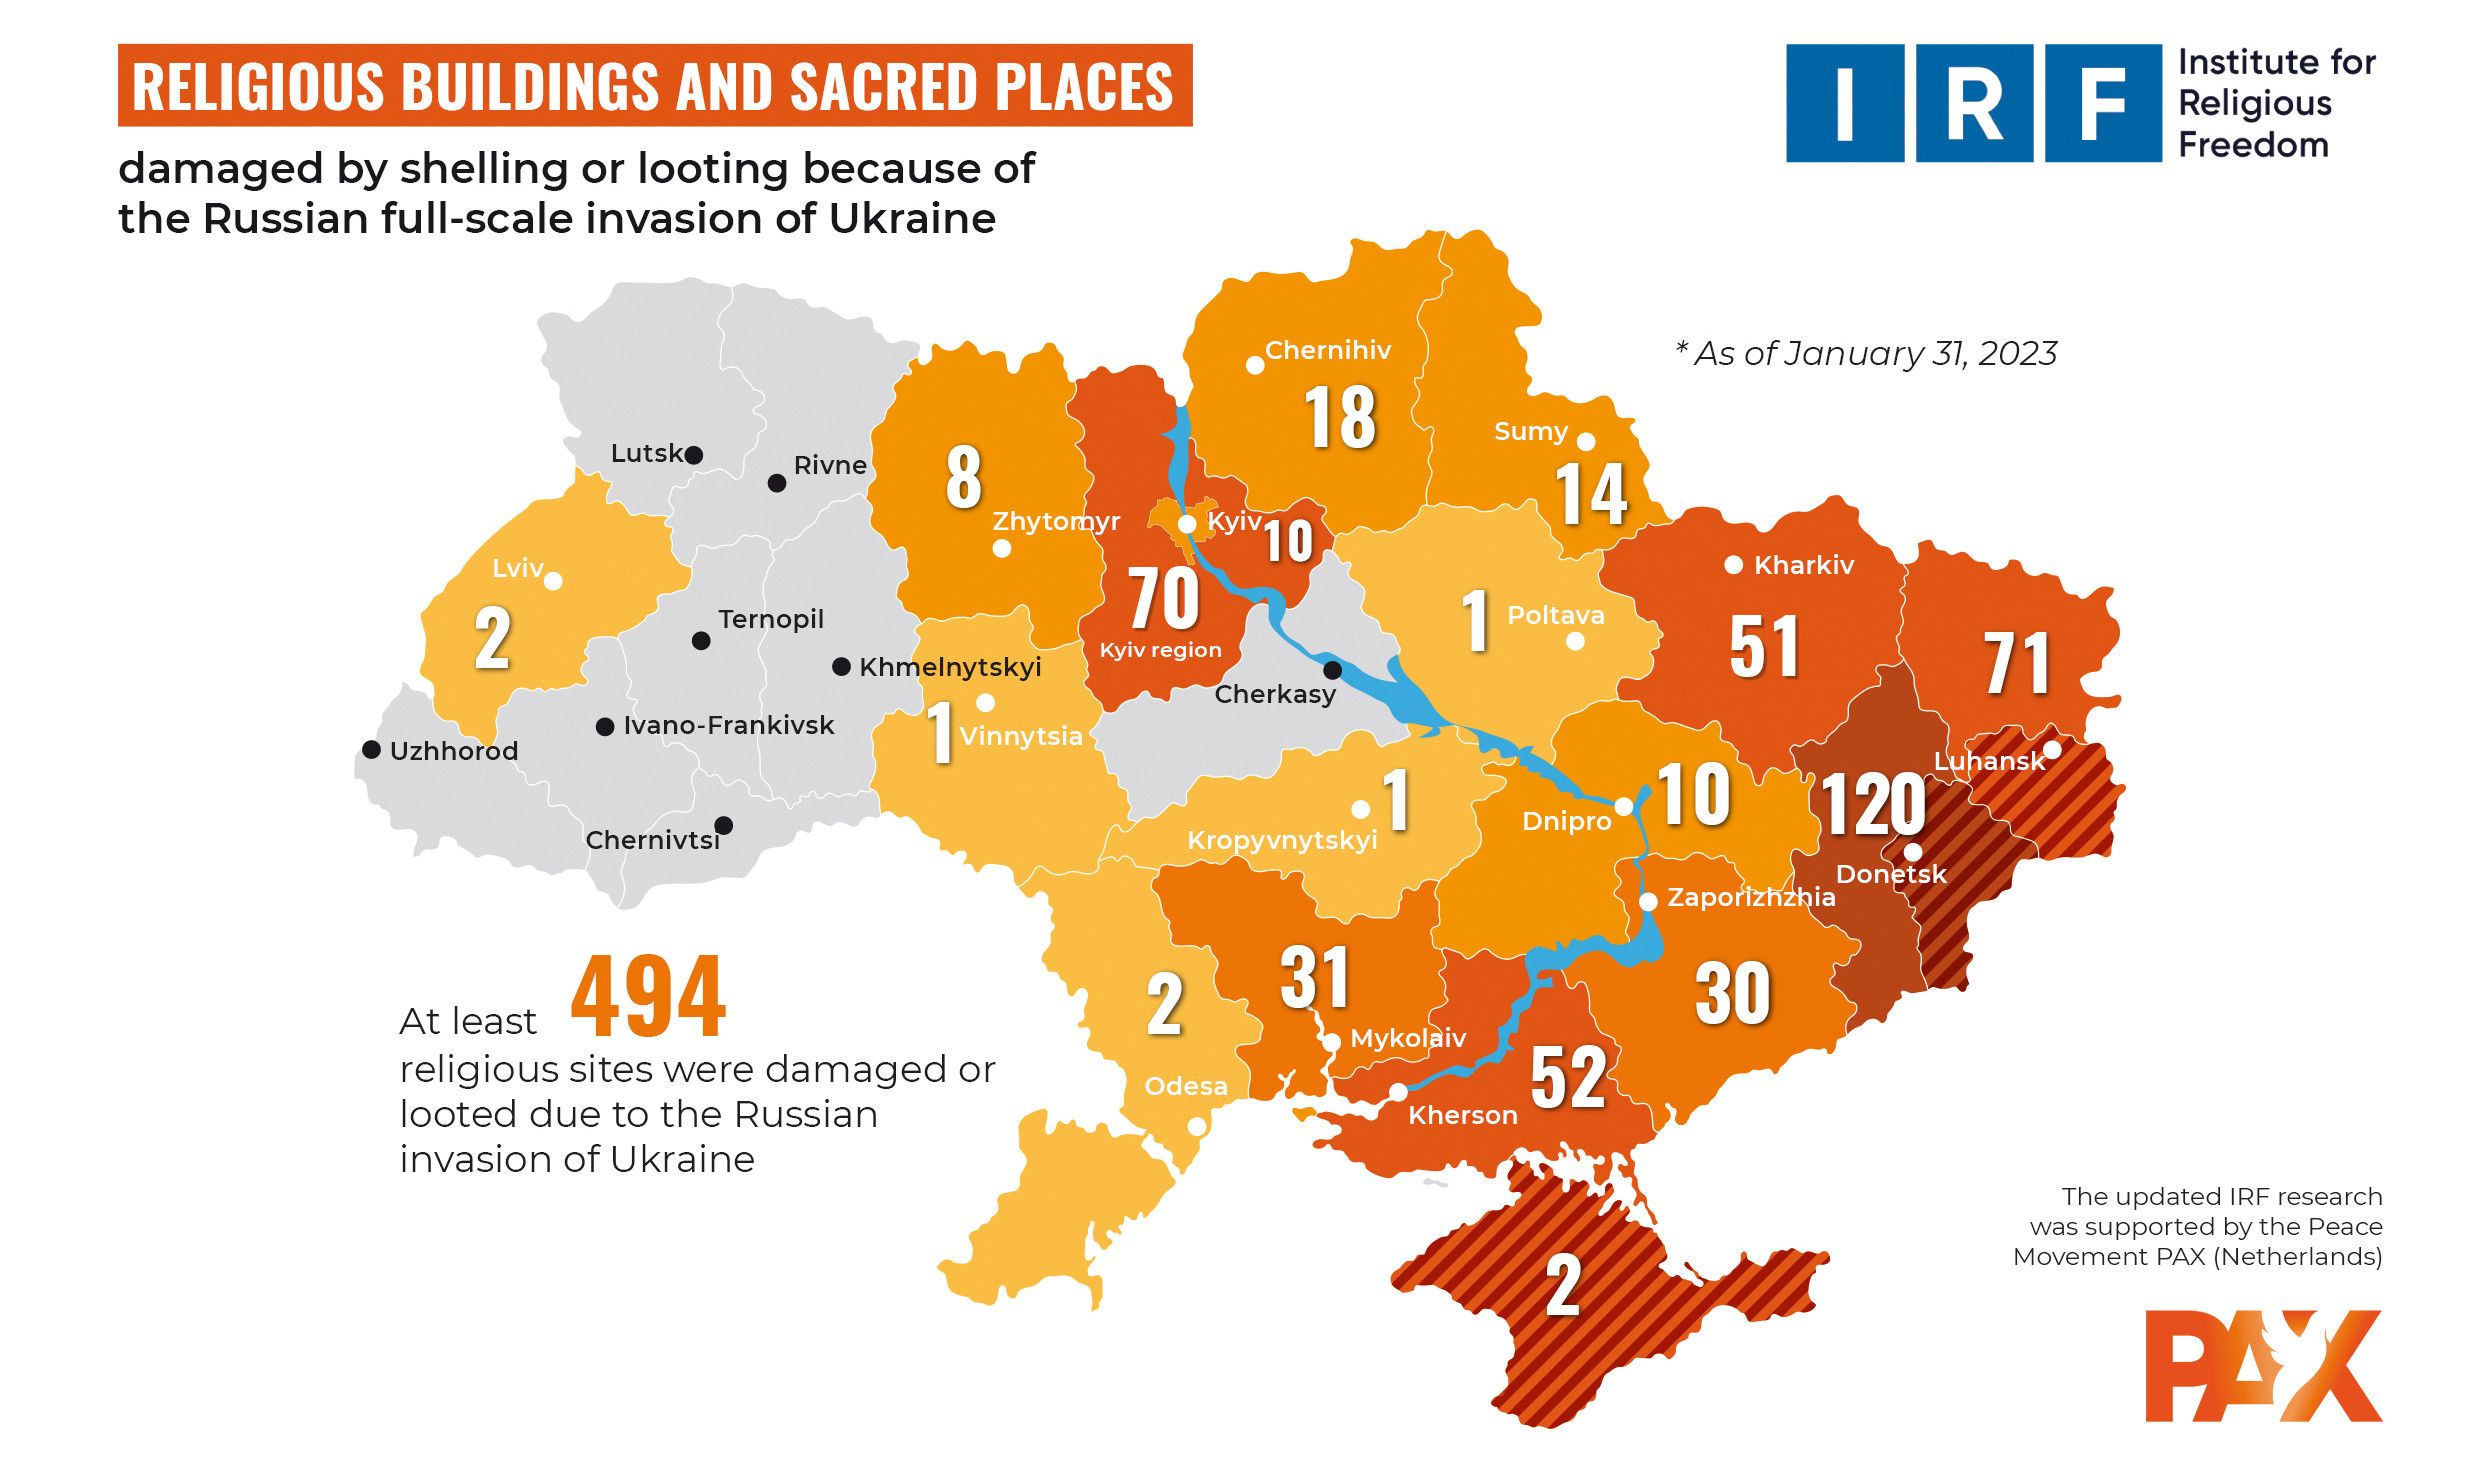 Майже 500 релігійних споруд зруйновано в Україні внаслідок російської агресії, - ІРС - фото 108079